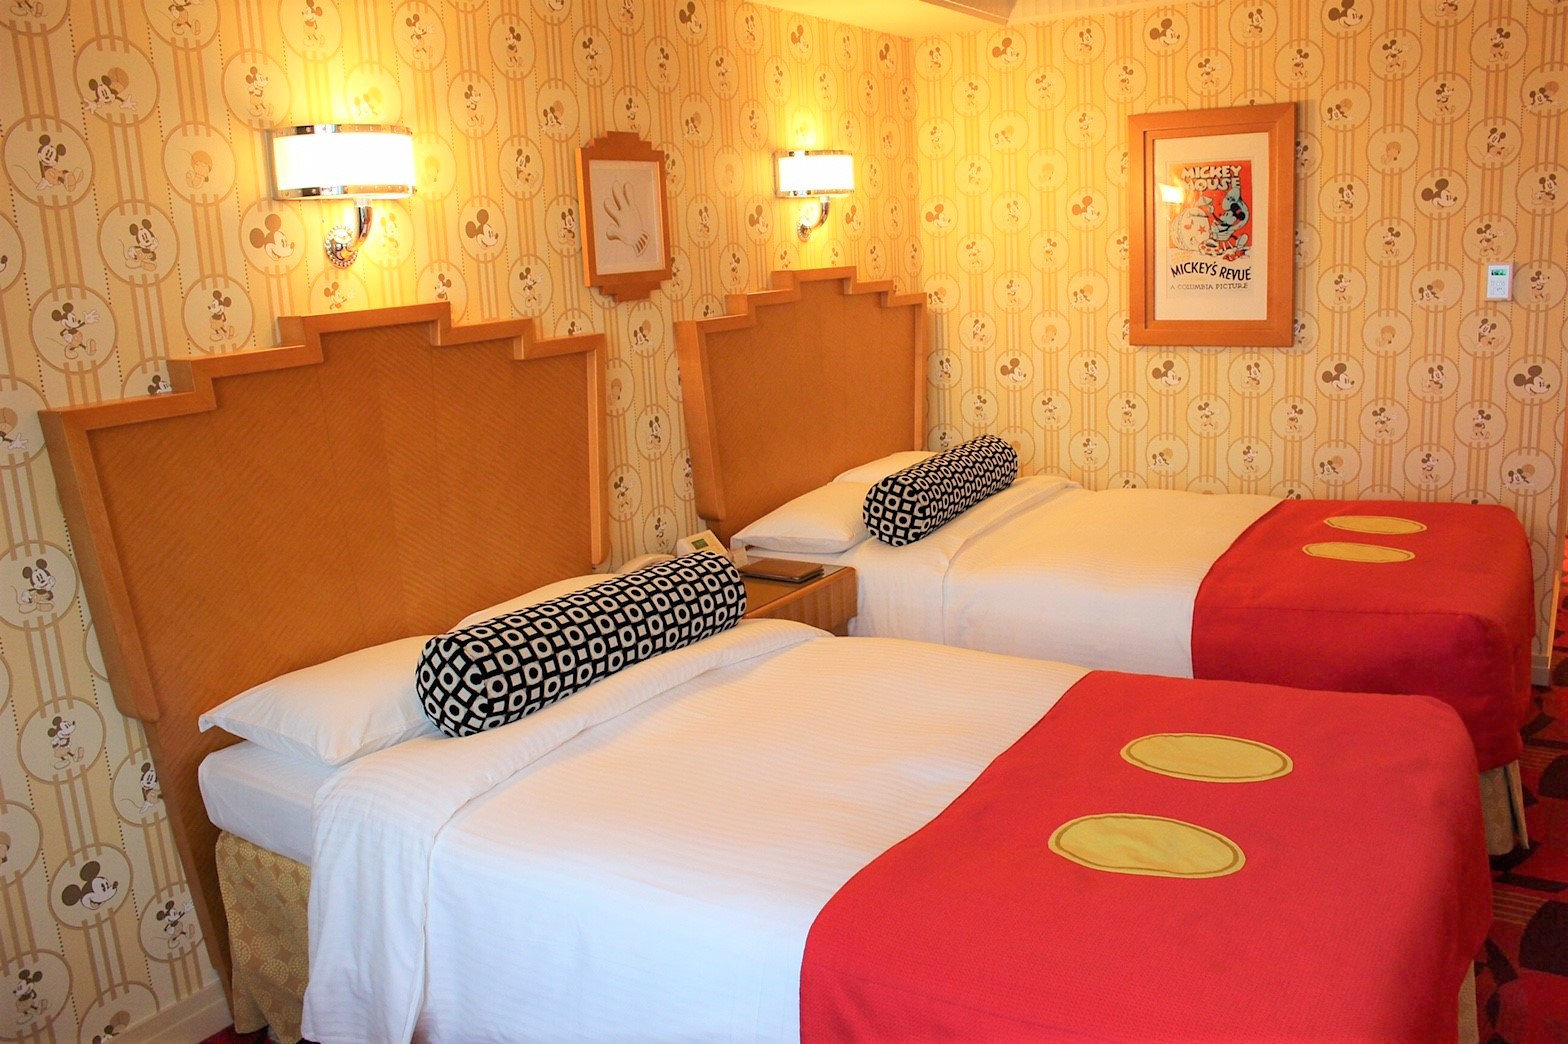 必見 ディズニー周辺ホテルに格安で泊まる方法7選 3000円台泊まる方法とは